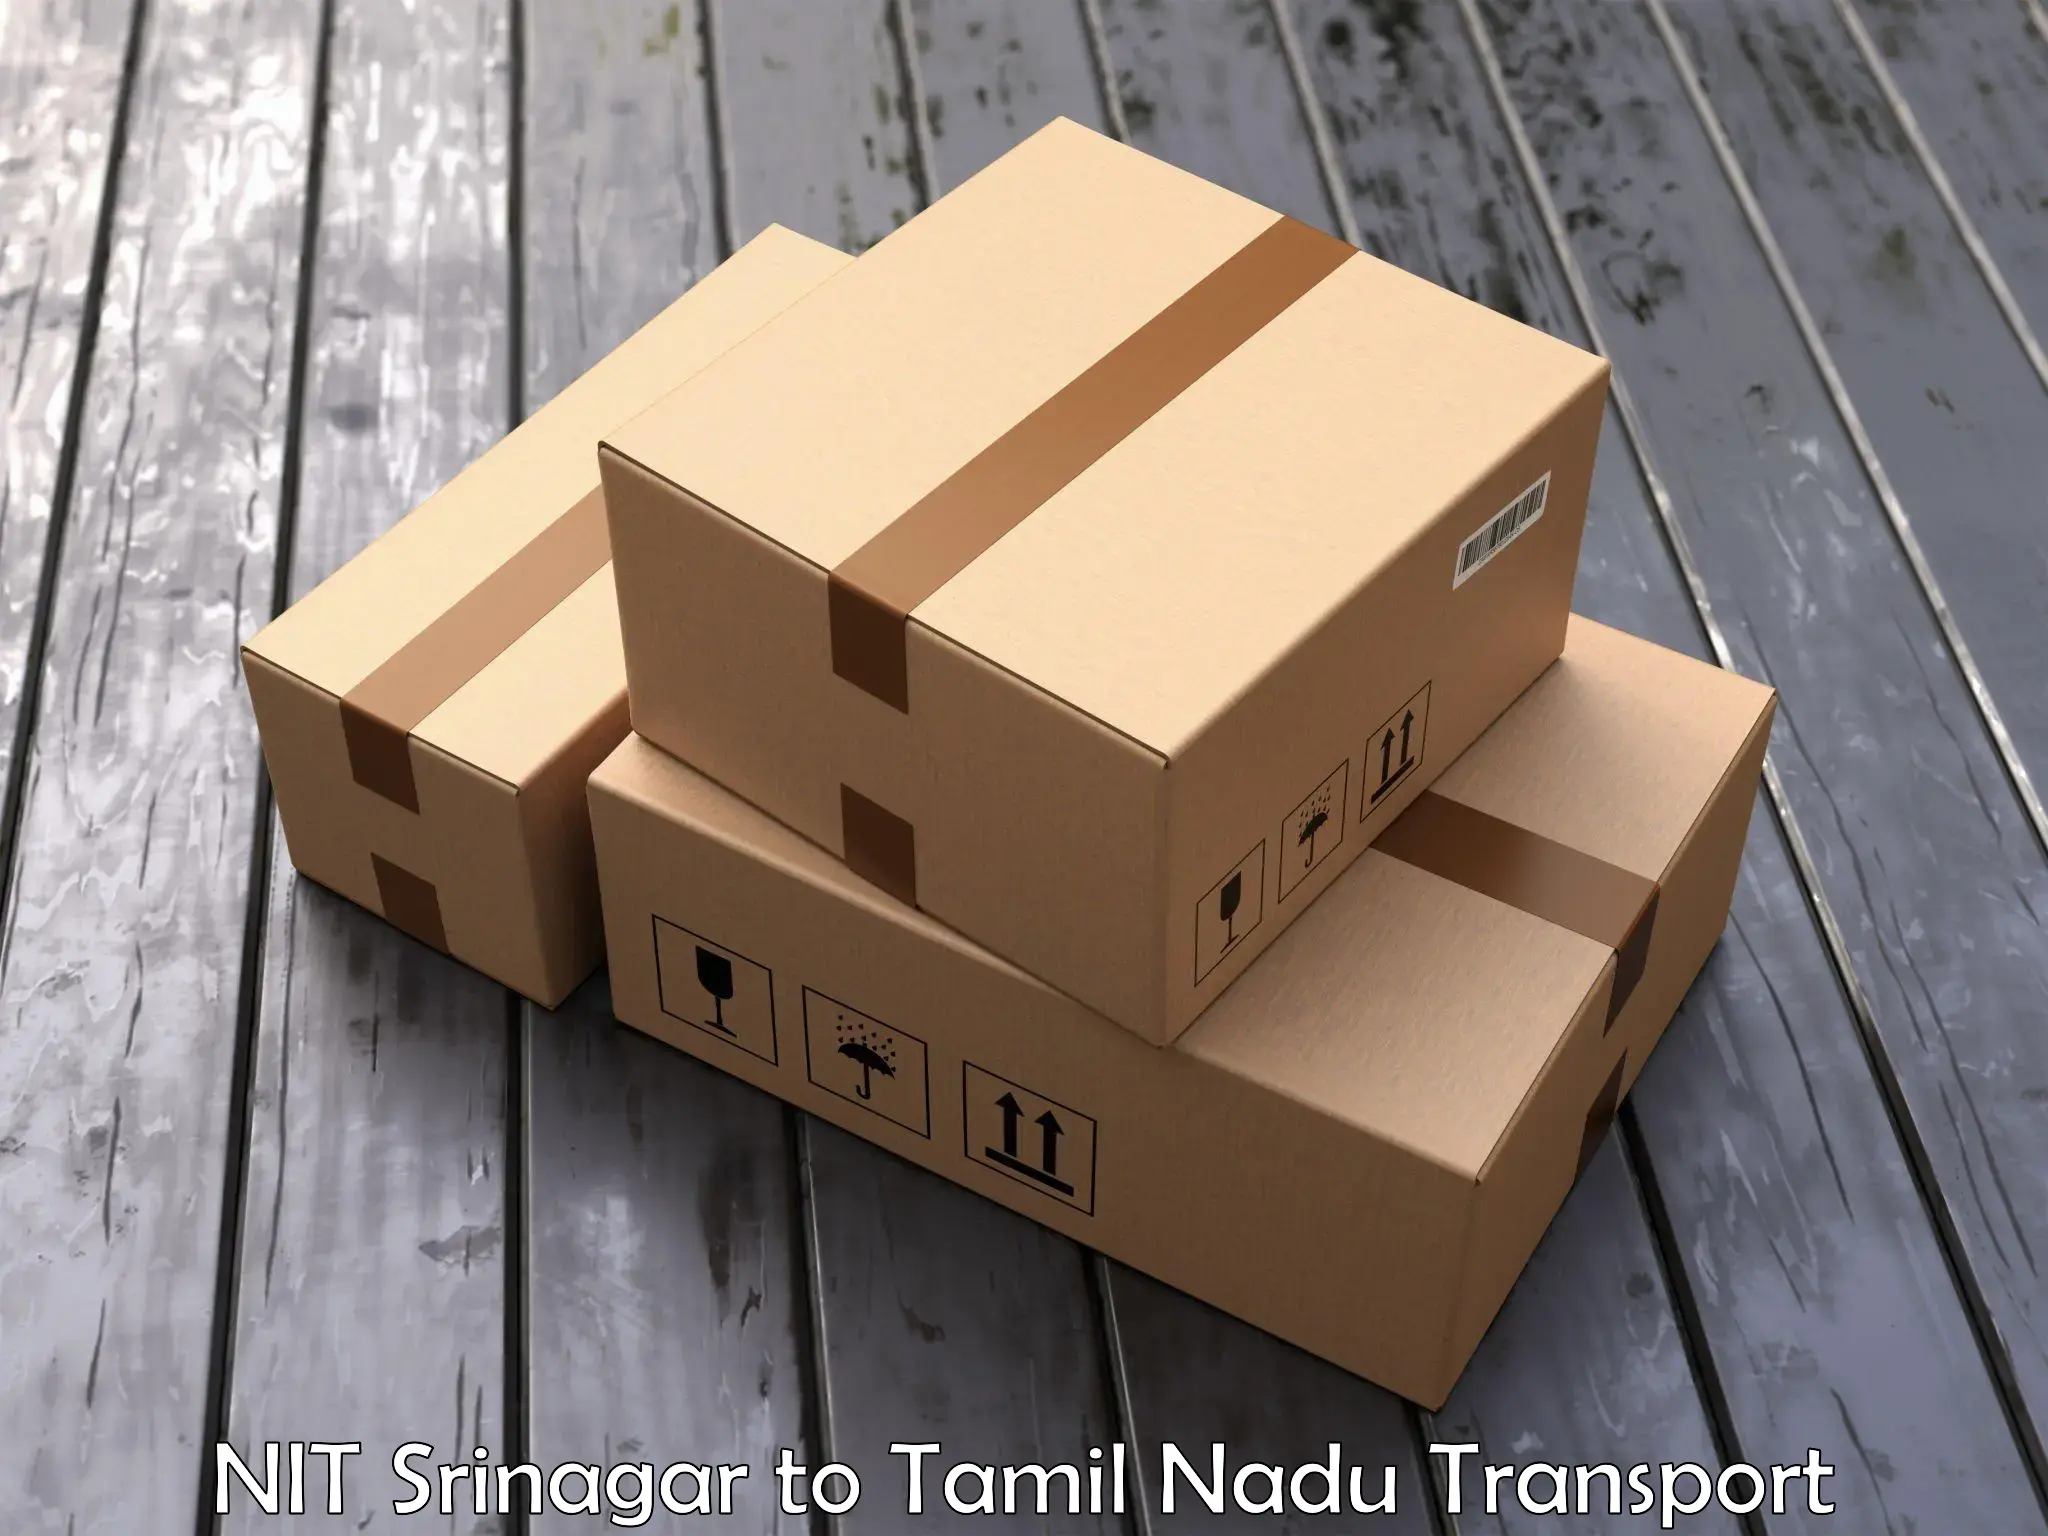 Container transportation services NIT Srinagar to Tamil Nadu